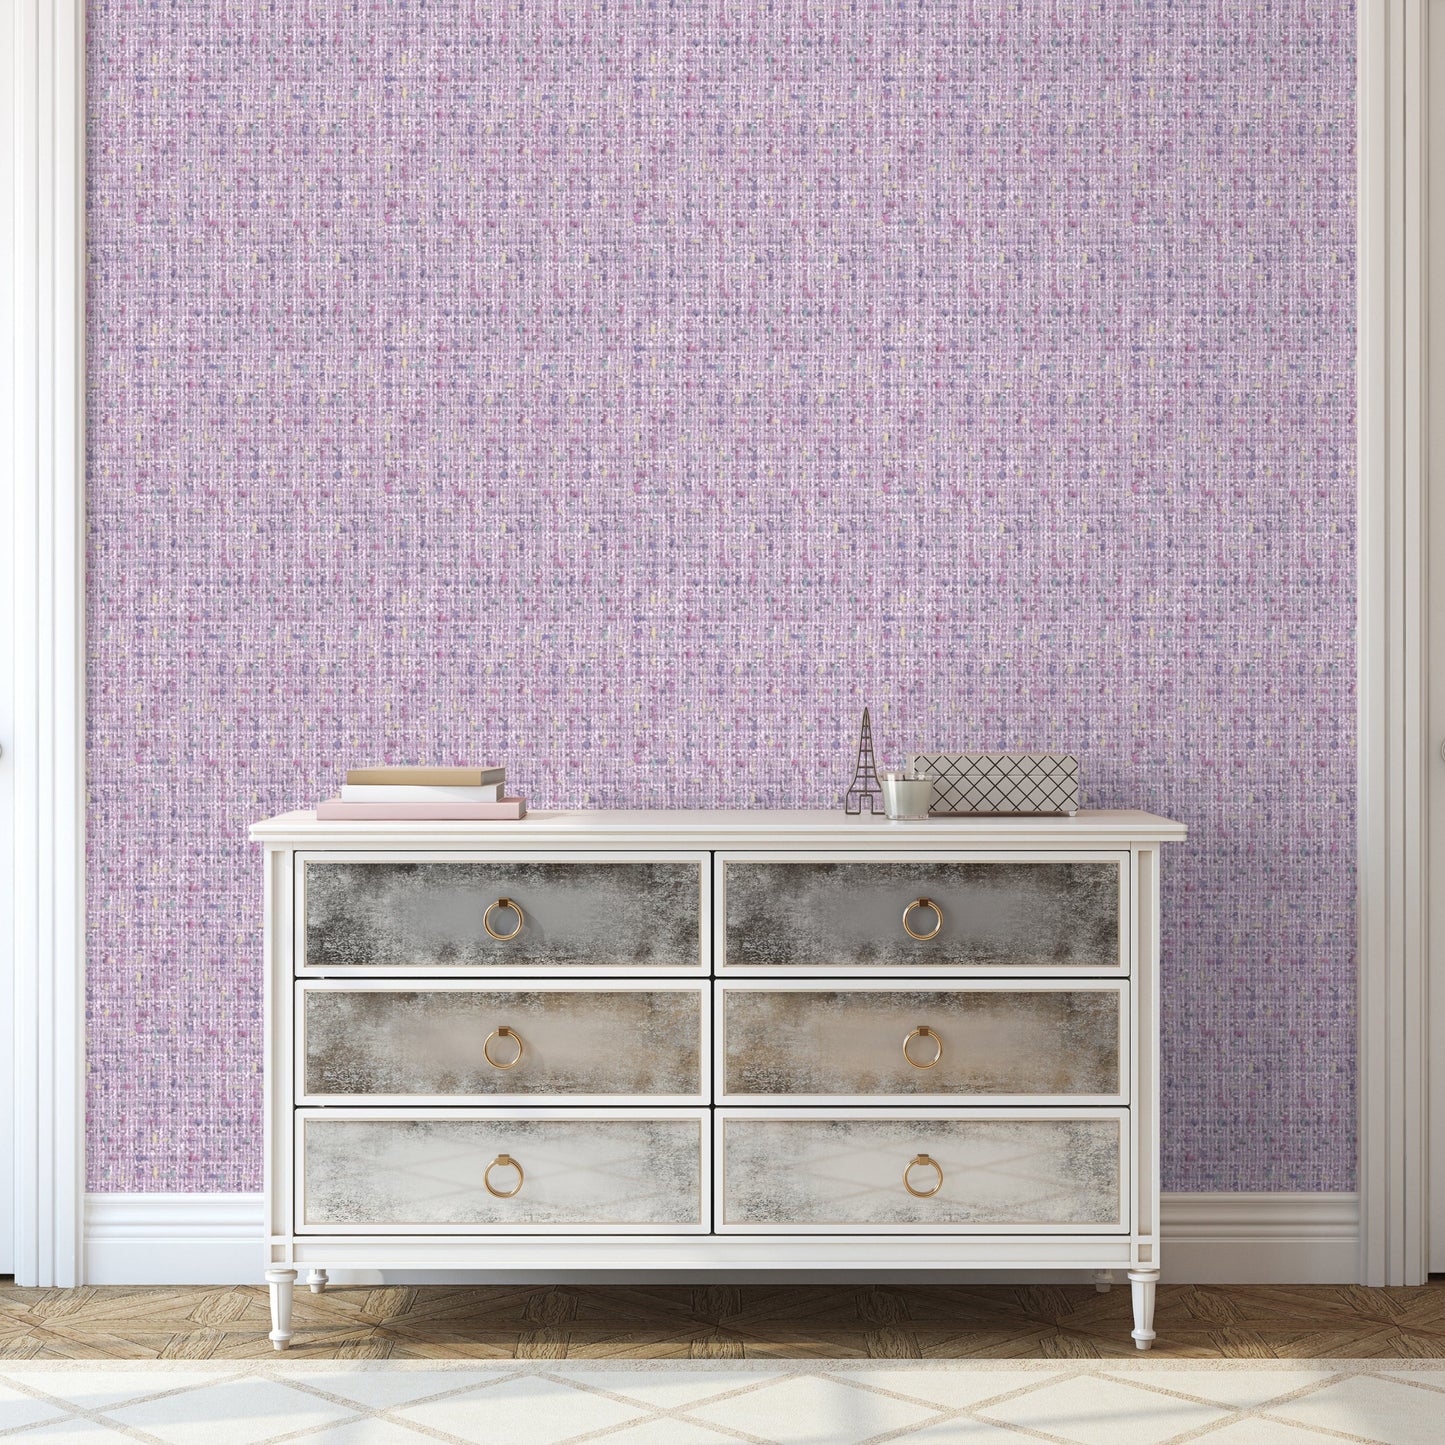 Dream House Purple Tweed Wallpaper